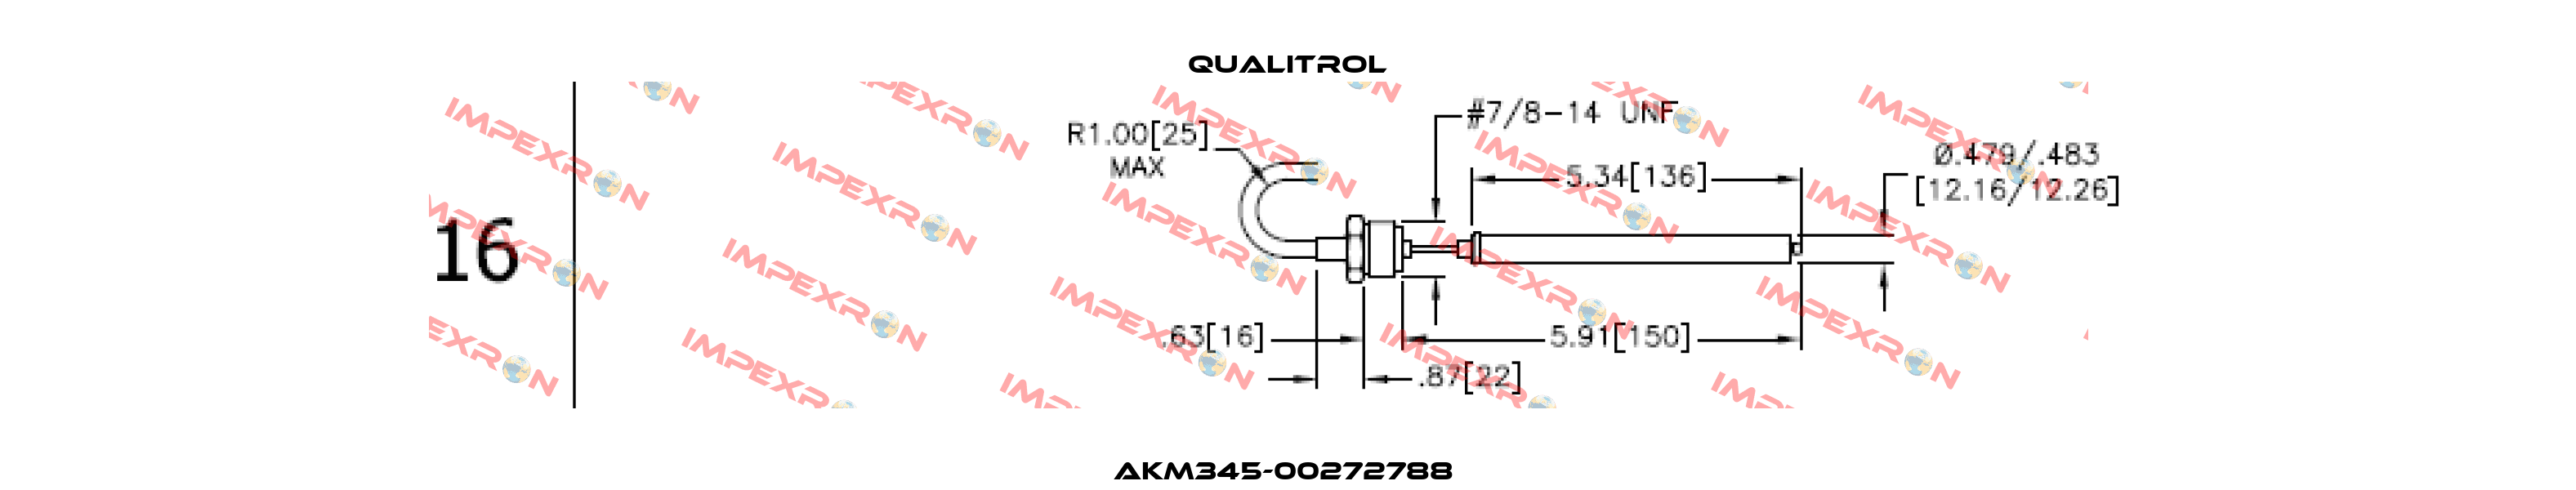 AKM345-00272788  Qualitrol